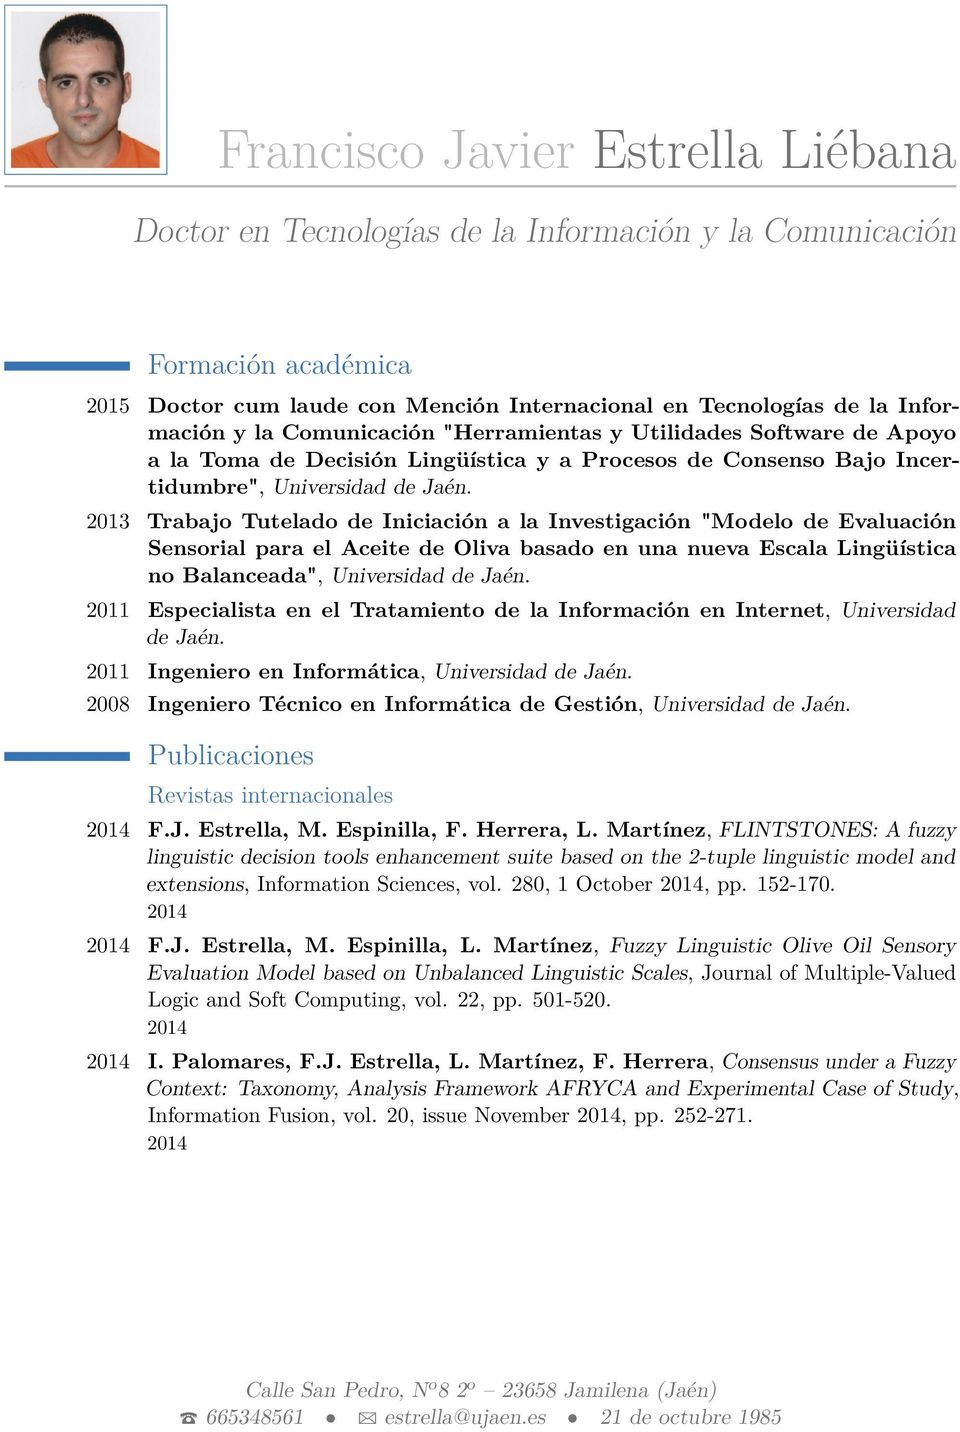 2013 Trabajo Tutelado de Iniciación a la Investigación "Modelo de Evaluación Sensorial para el Aceite de Oliva basado en una nueva Escala Lingüística no Balanceada", Universidad de Jaén.